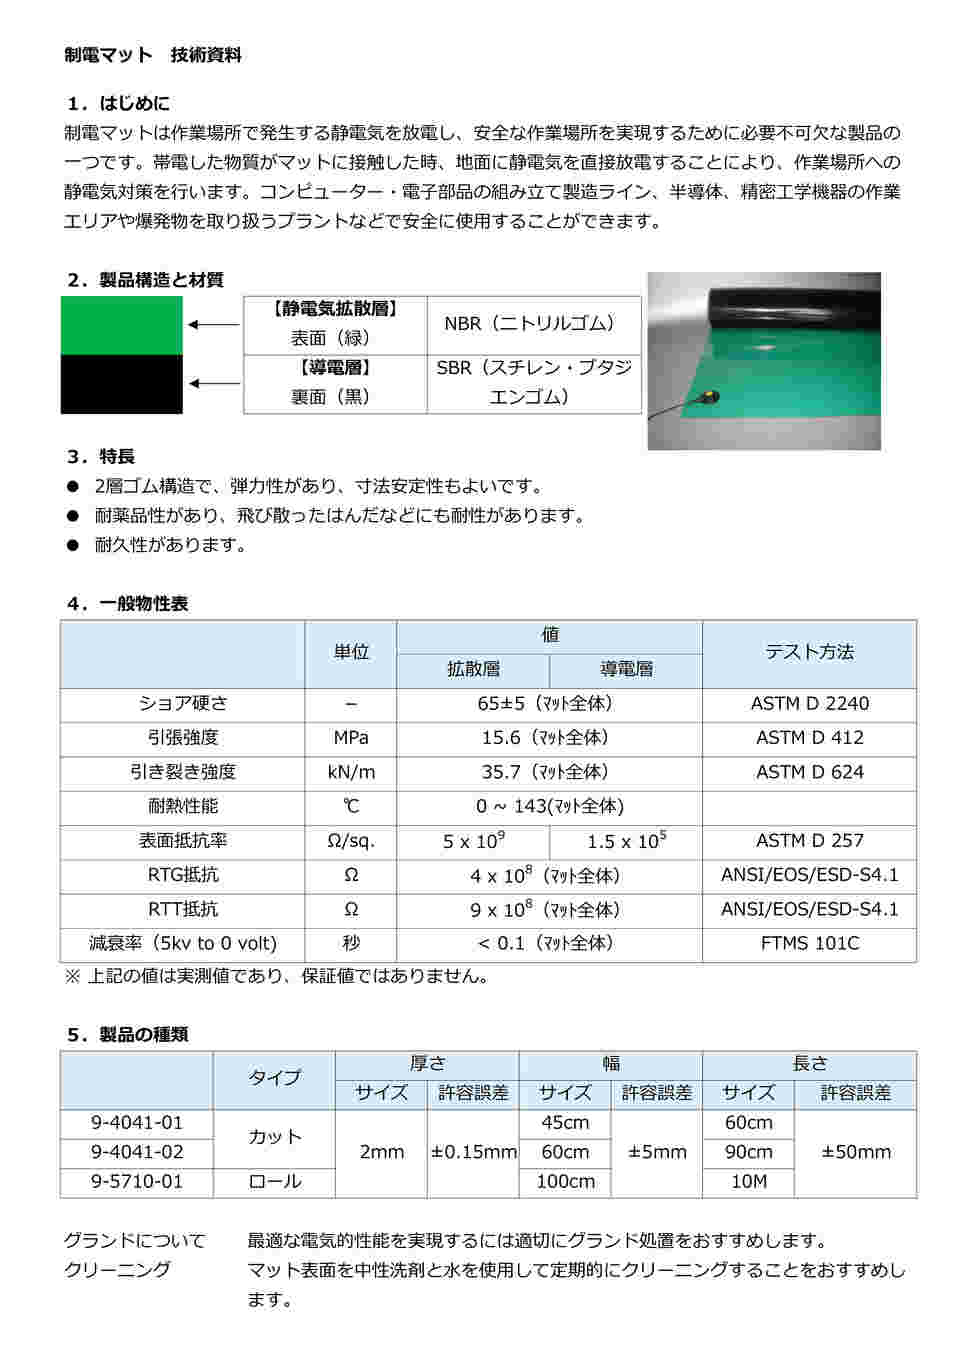 9-5710-01 静電マット（ロールタイプ） 1m×10m×2mm グリーン 【AXEL